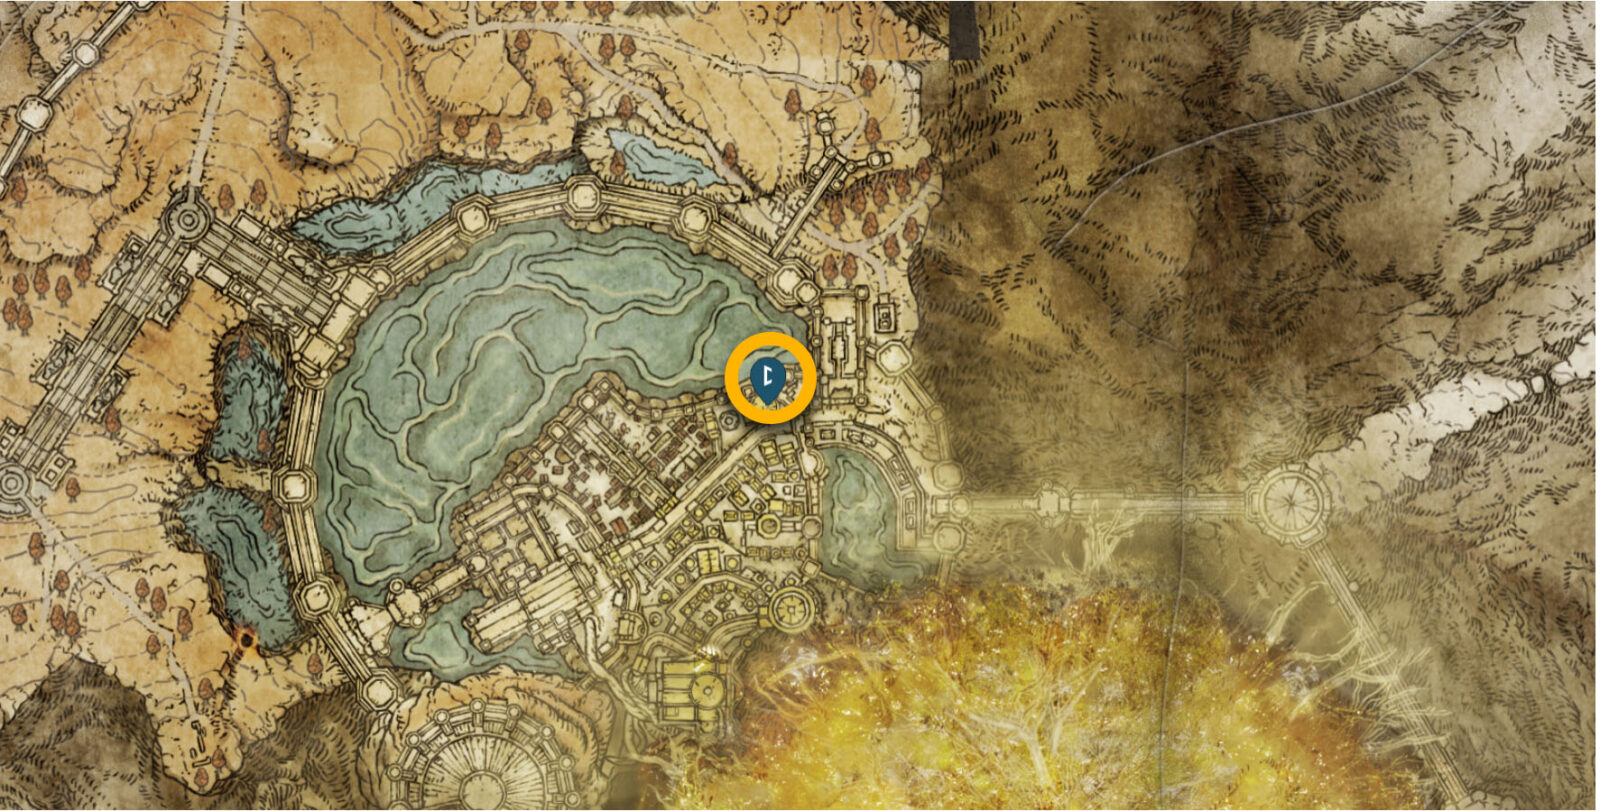 Hero's Runes 5 location in Subterranean Shunning Grounds in Elden Ring 